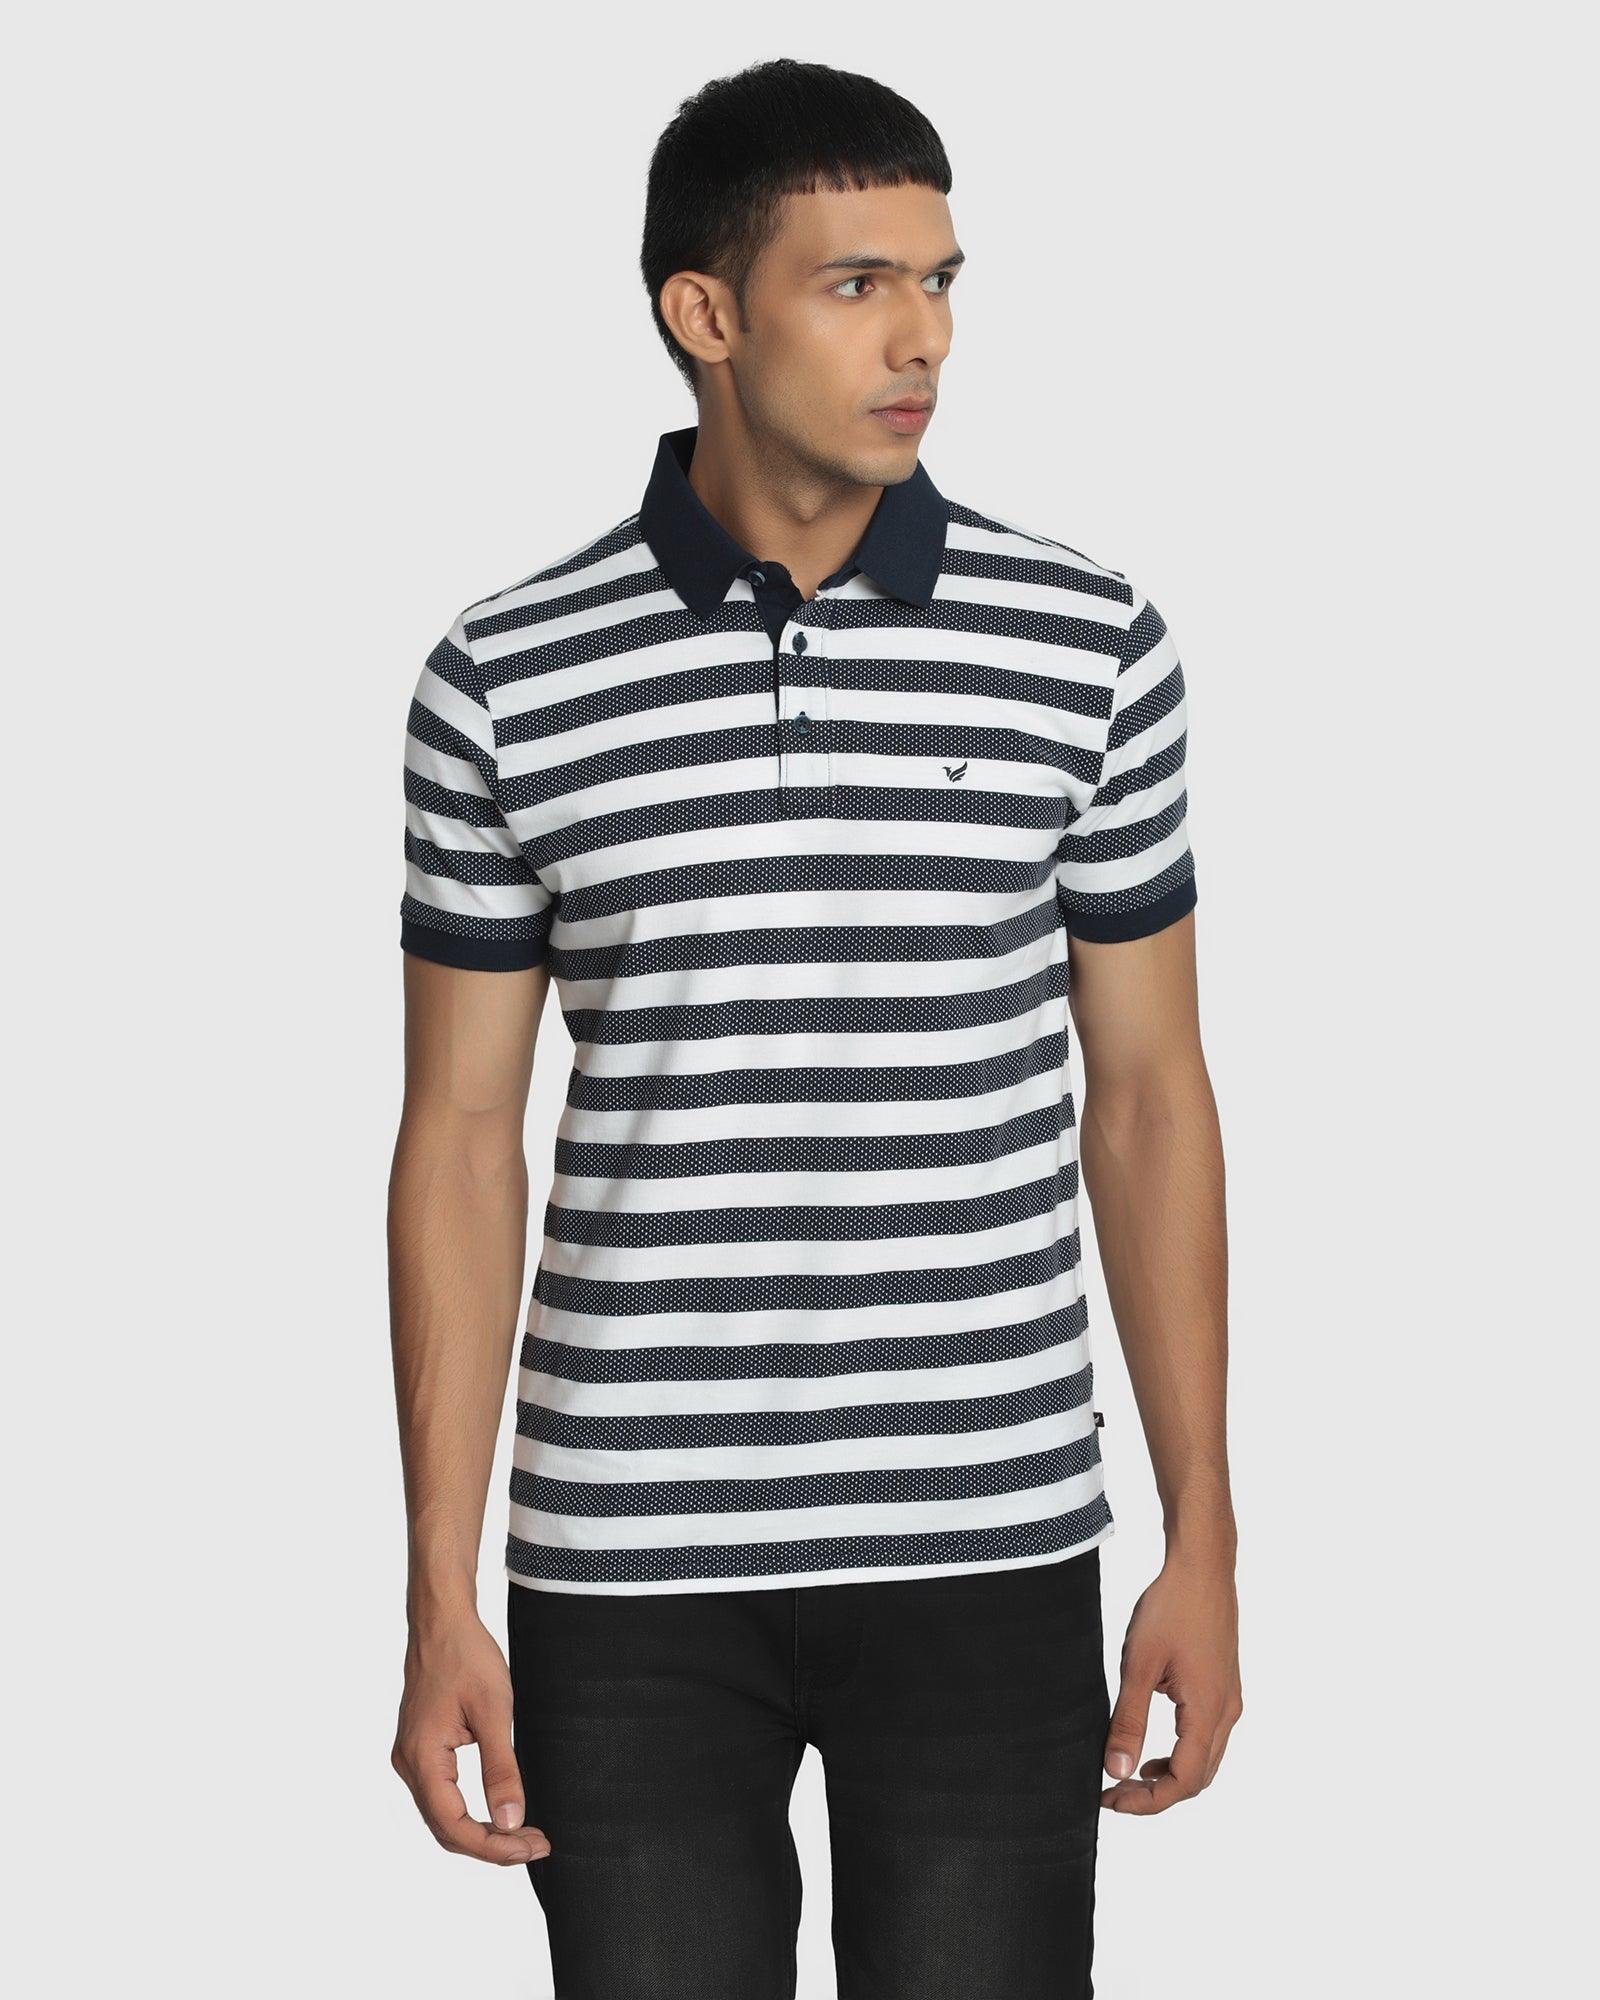 Polo Navy Striped T Shirt - Jona